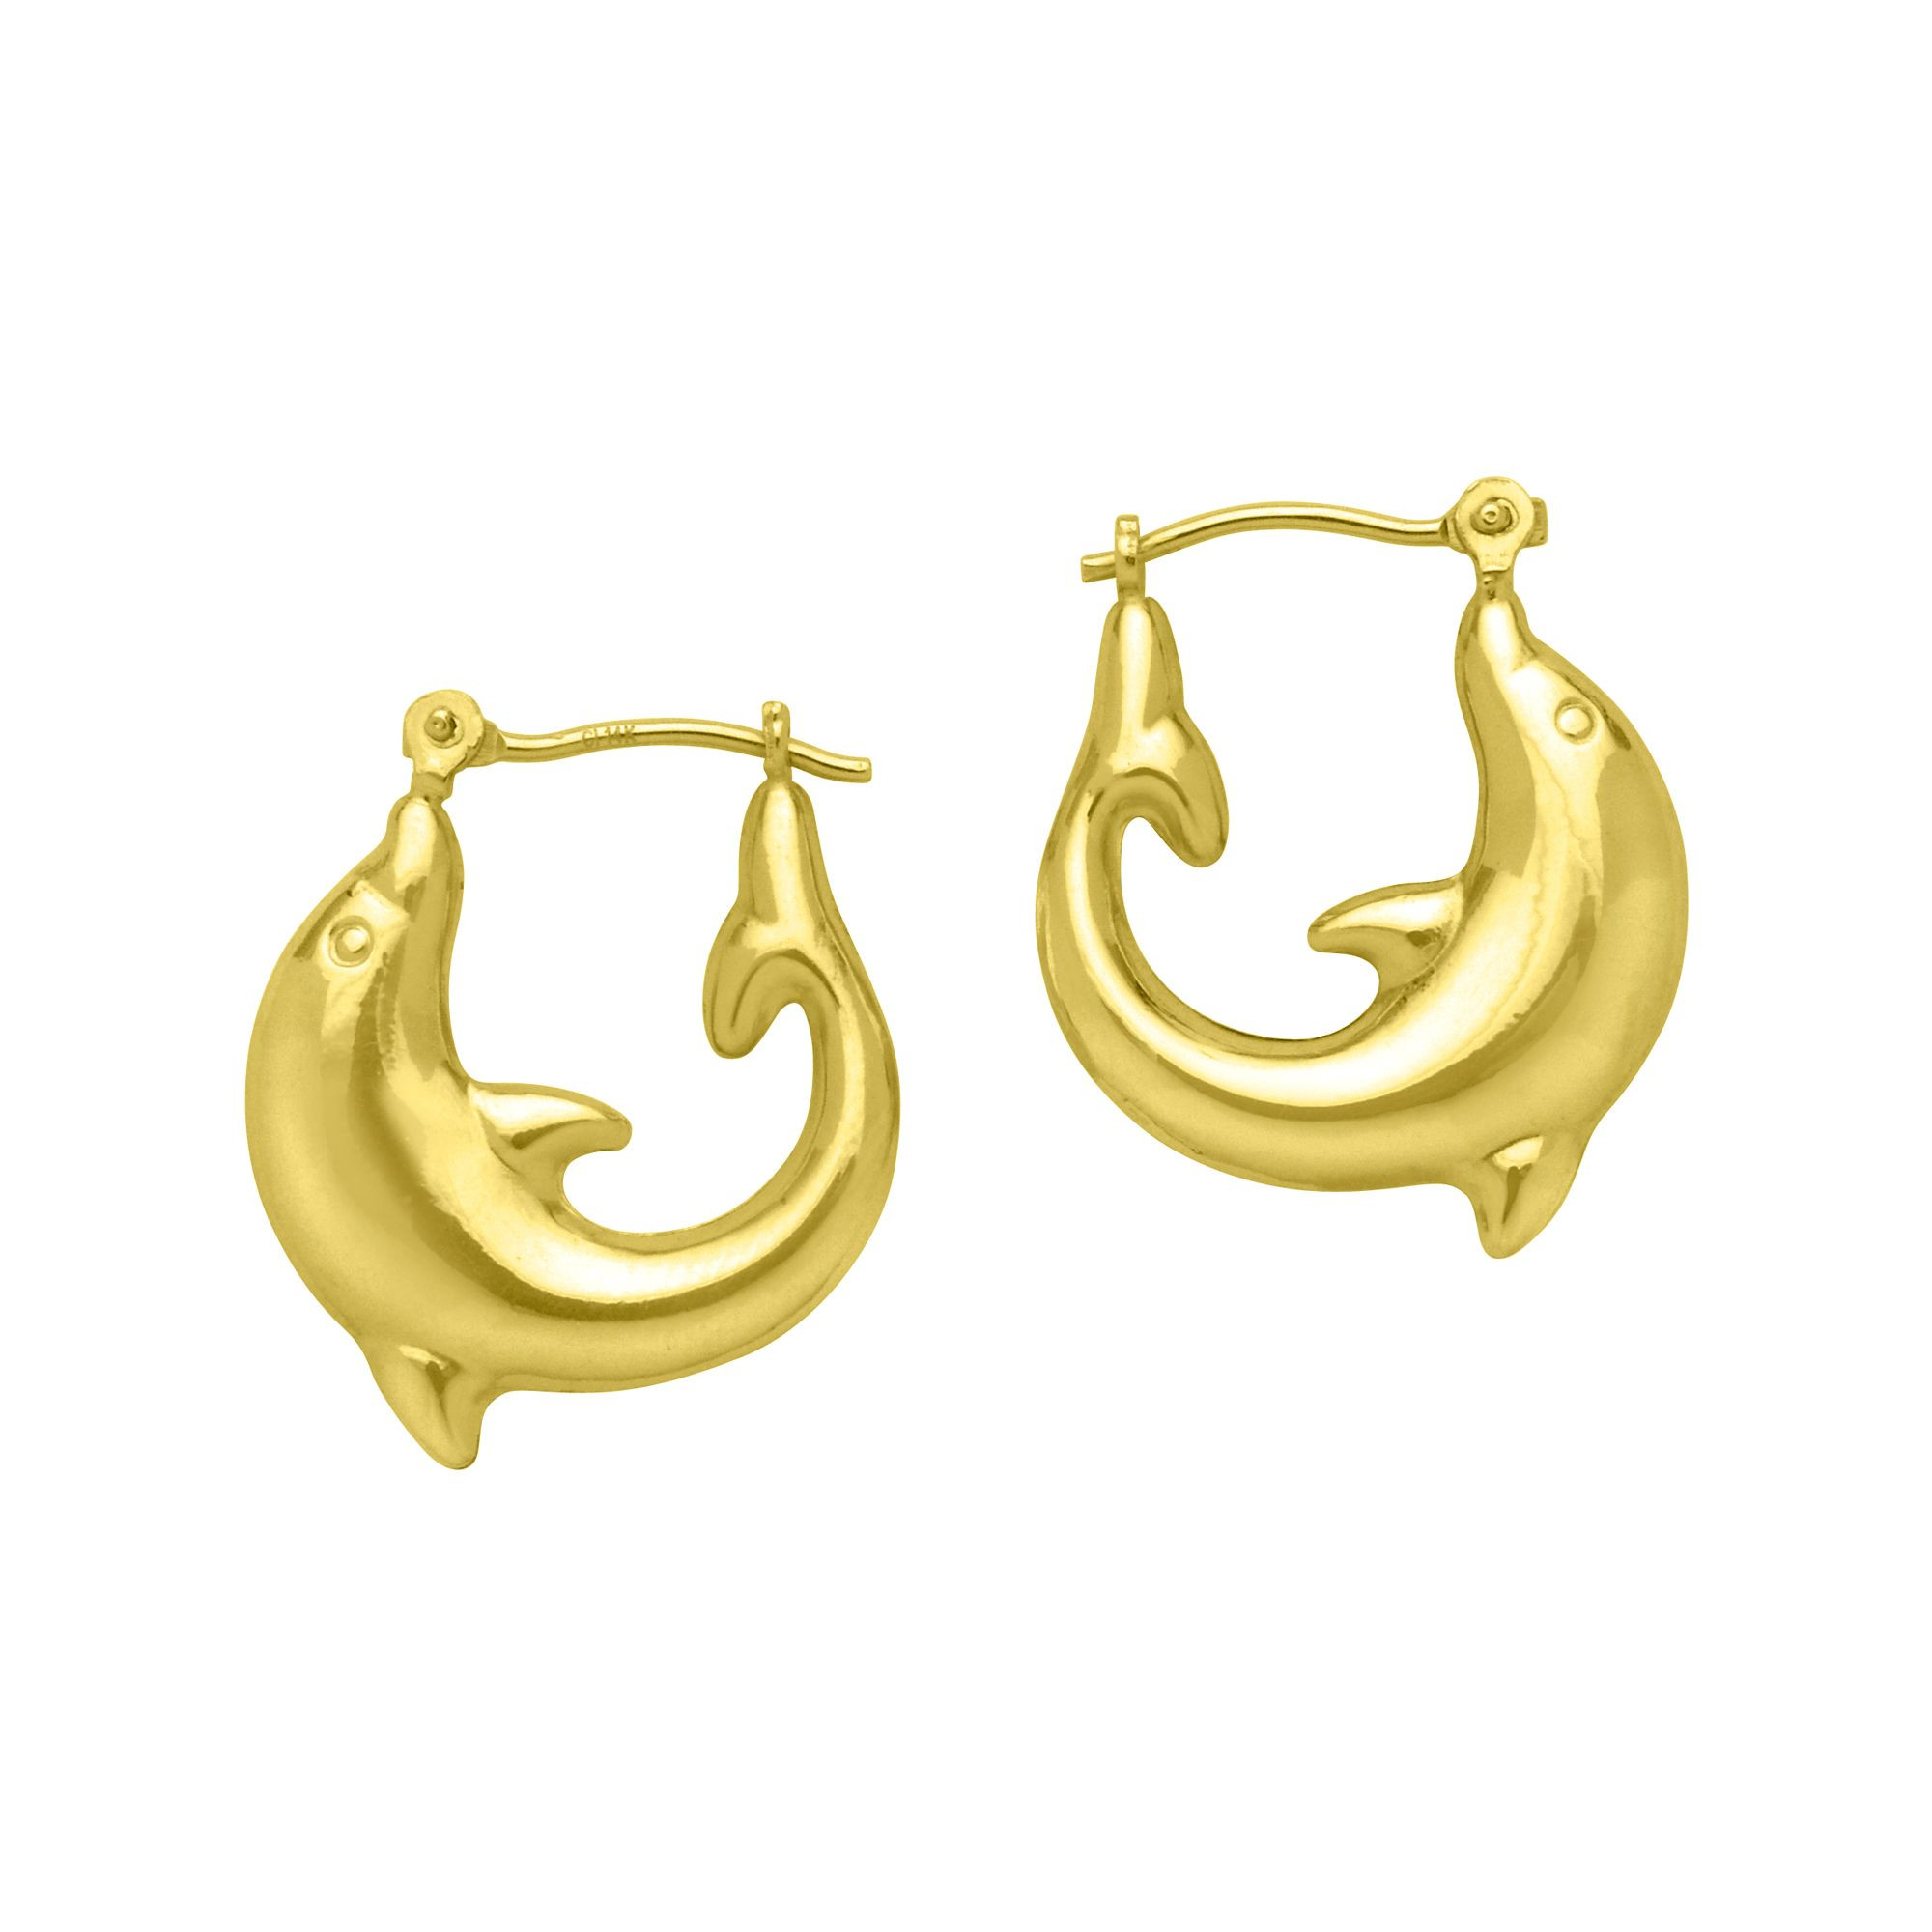 Gold Dolphin Earrings
 Dolphin Hoop Earrings 10K Yellow Gold Jewelry Earrings